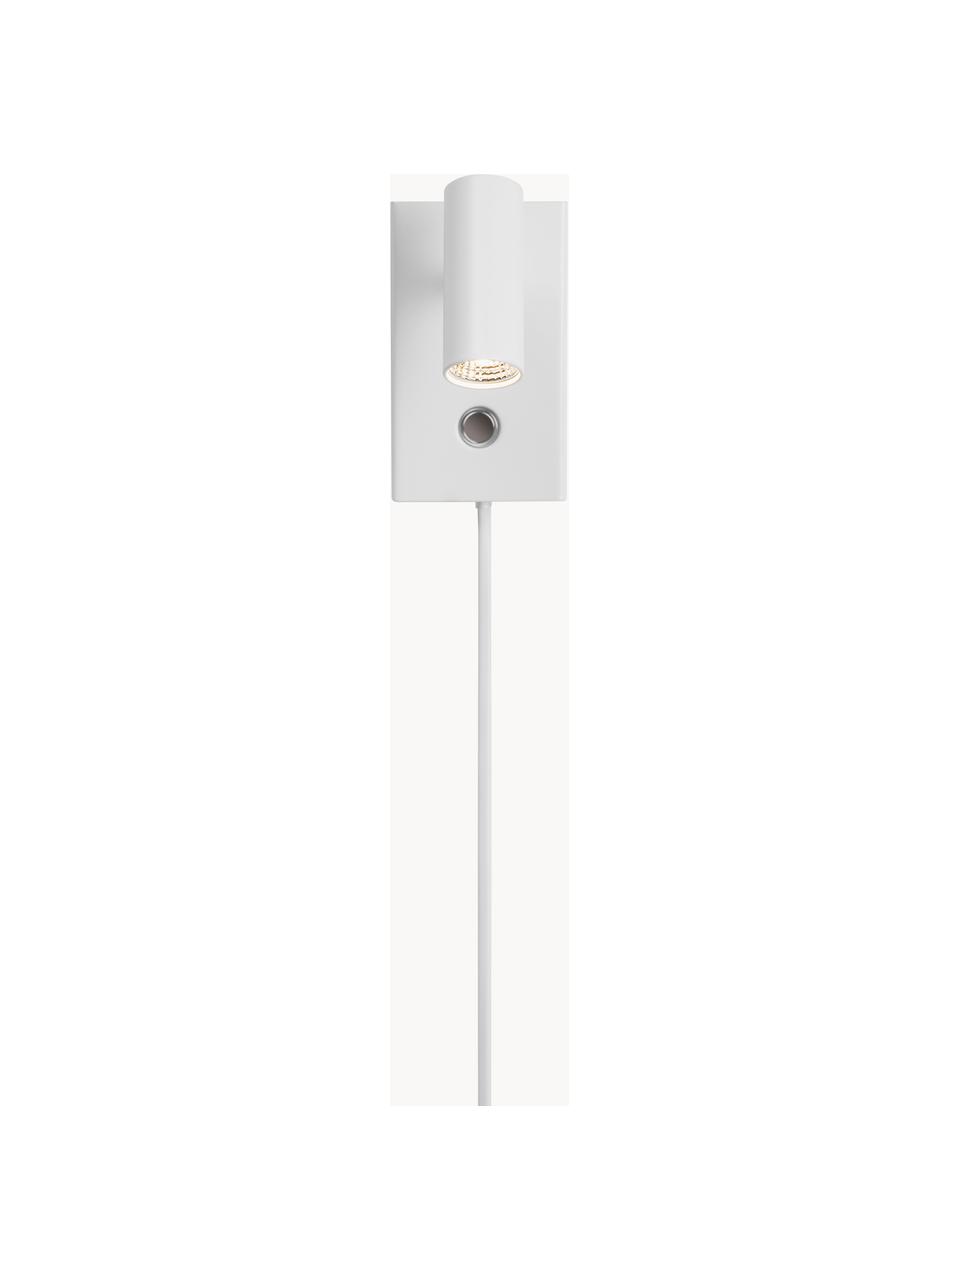 Kleine dimbare LED wandlamp Omari met stekker, Lampenkap: gecoat metaal, Wit, B 7 x H 12 cm